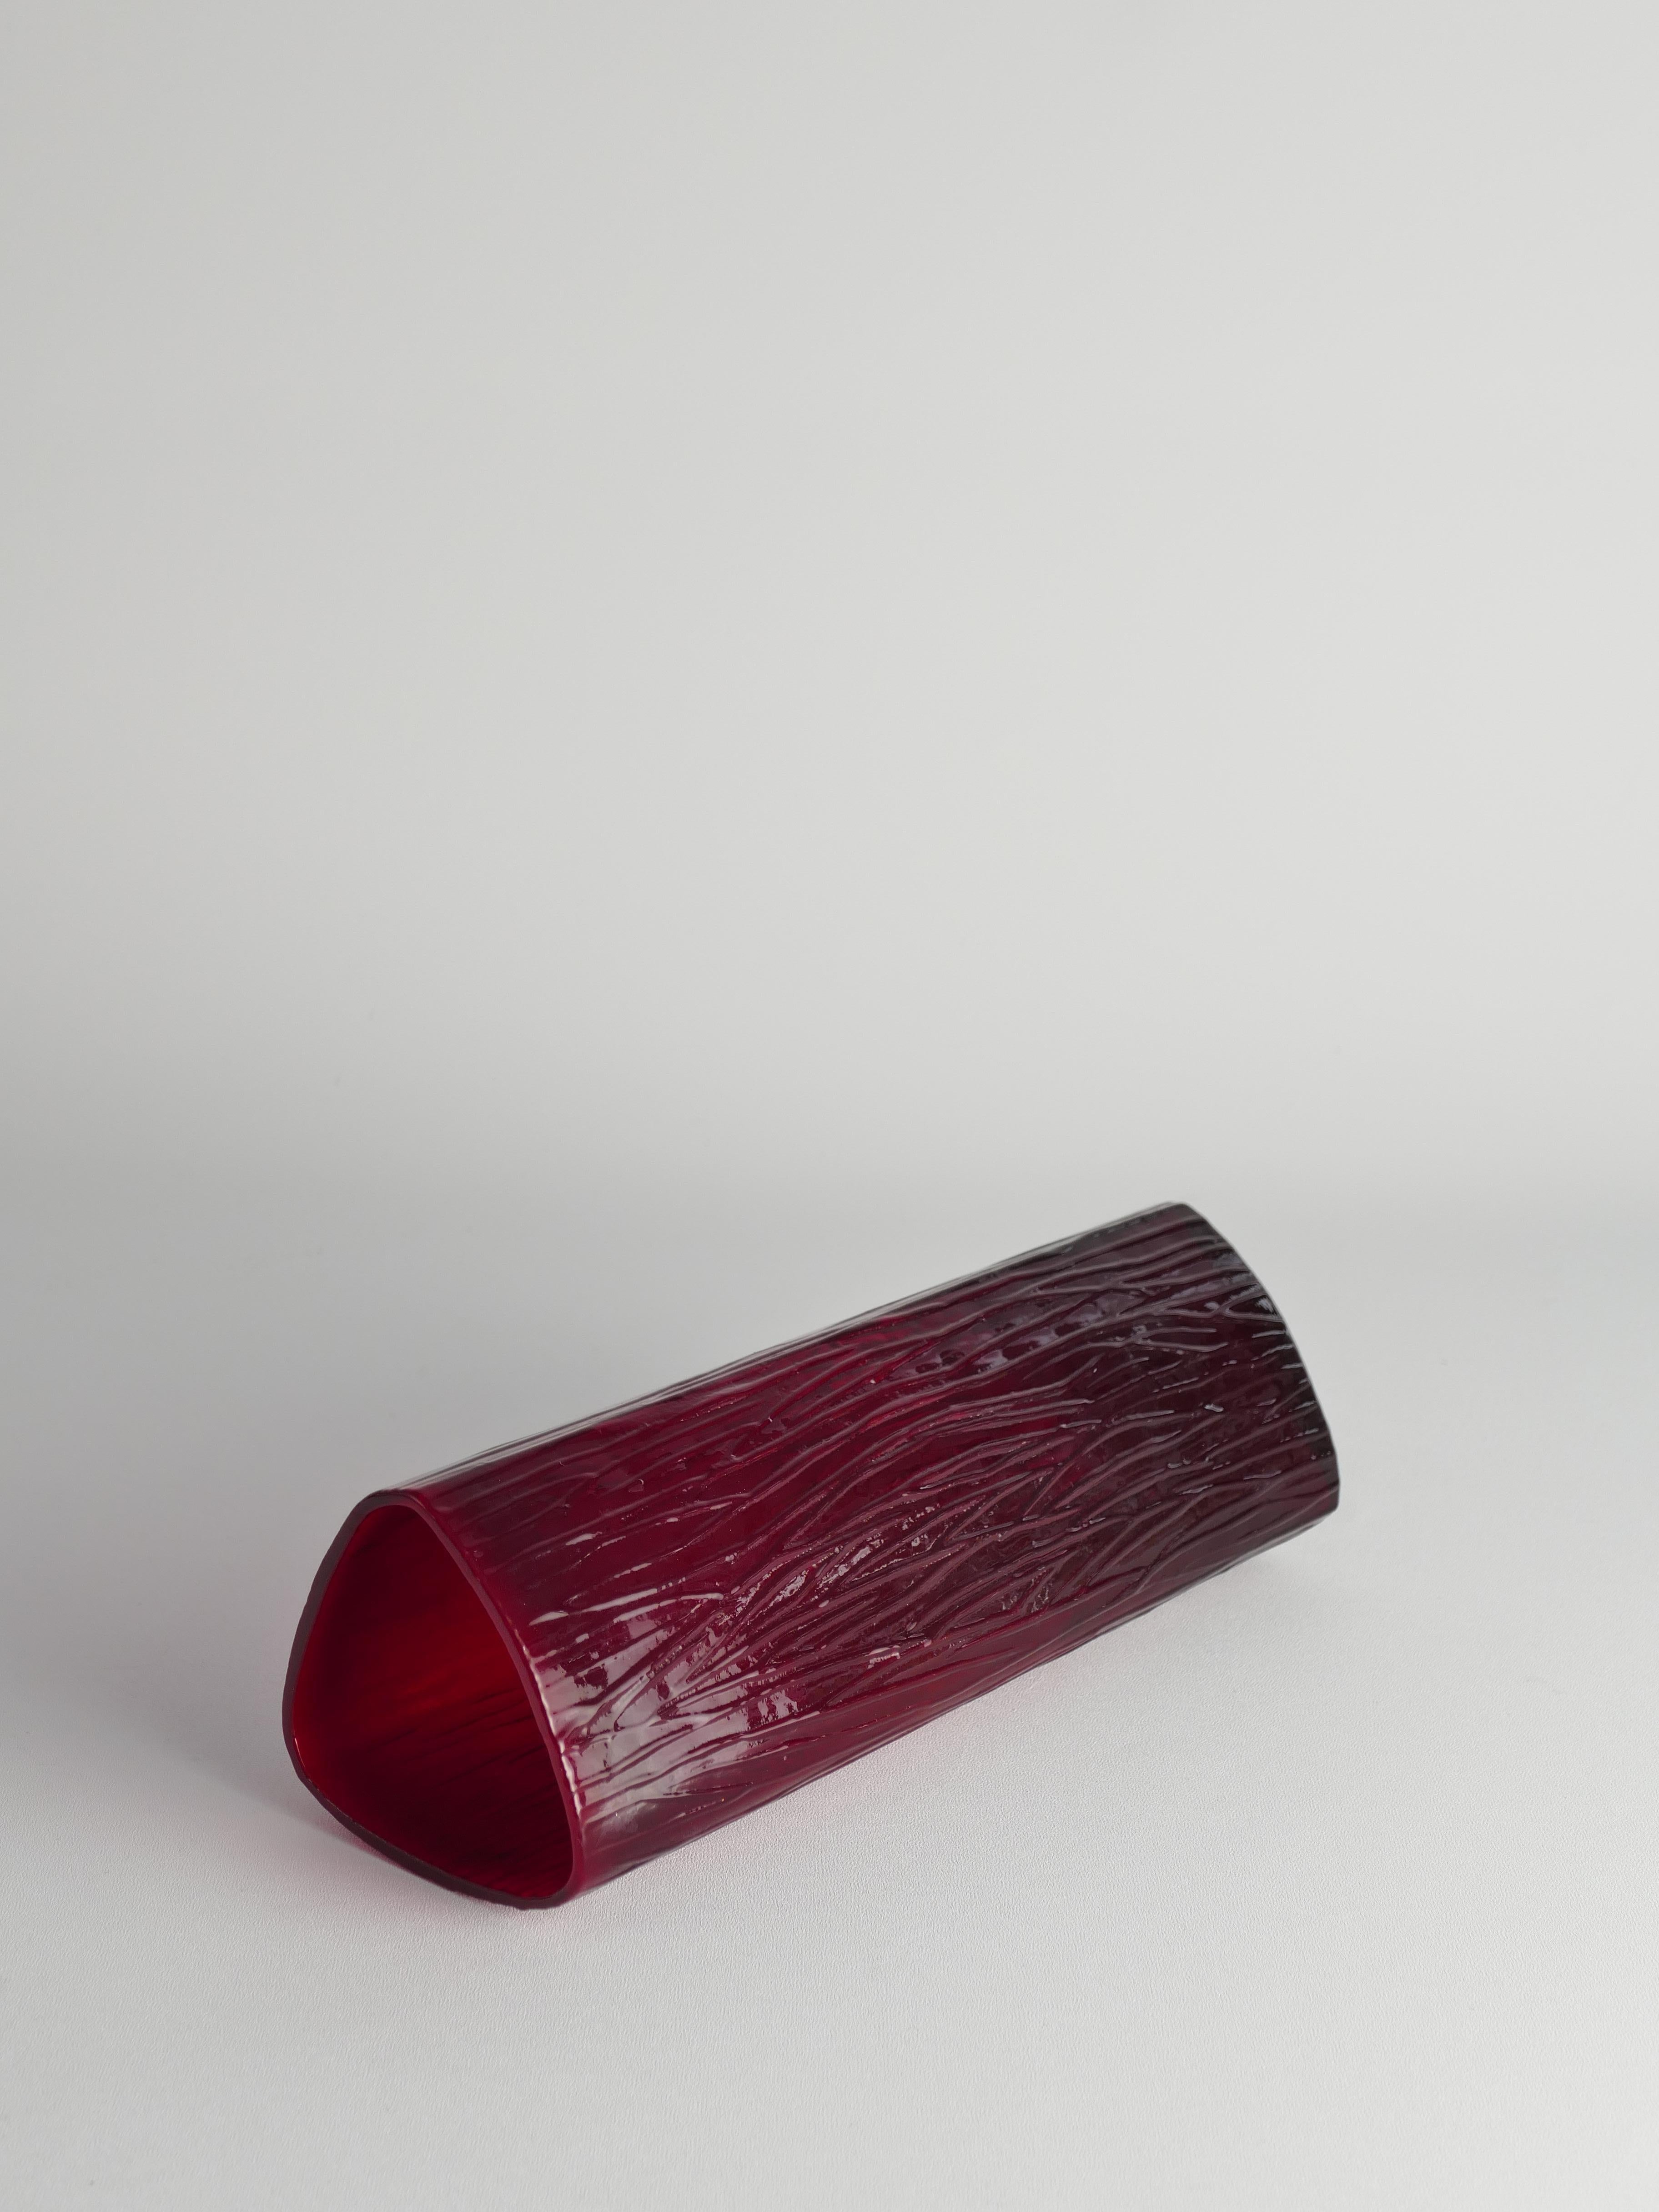 Swedish Red Devil Triangular Glass Vase by Christer Sjögren for Lindshammar For Sale 3